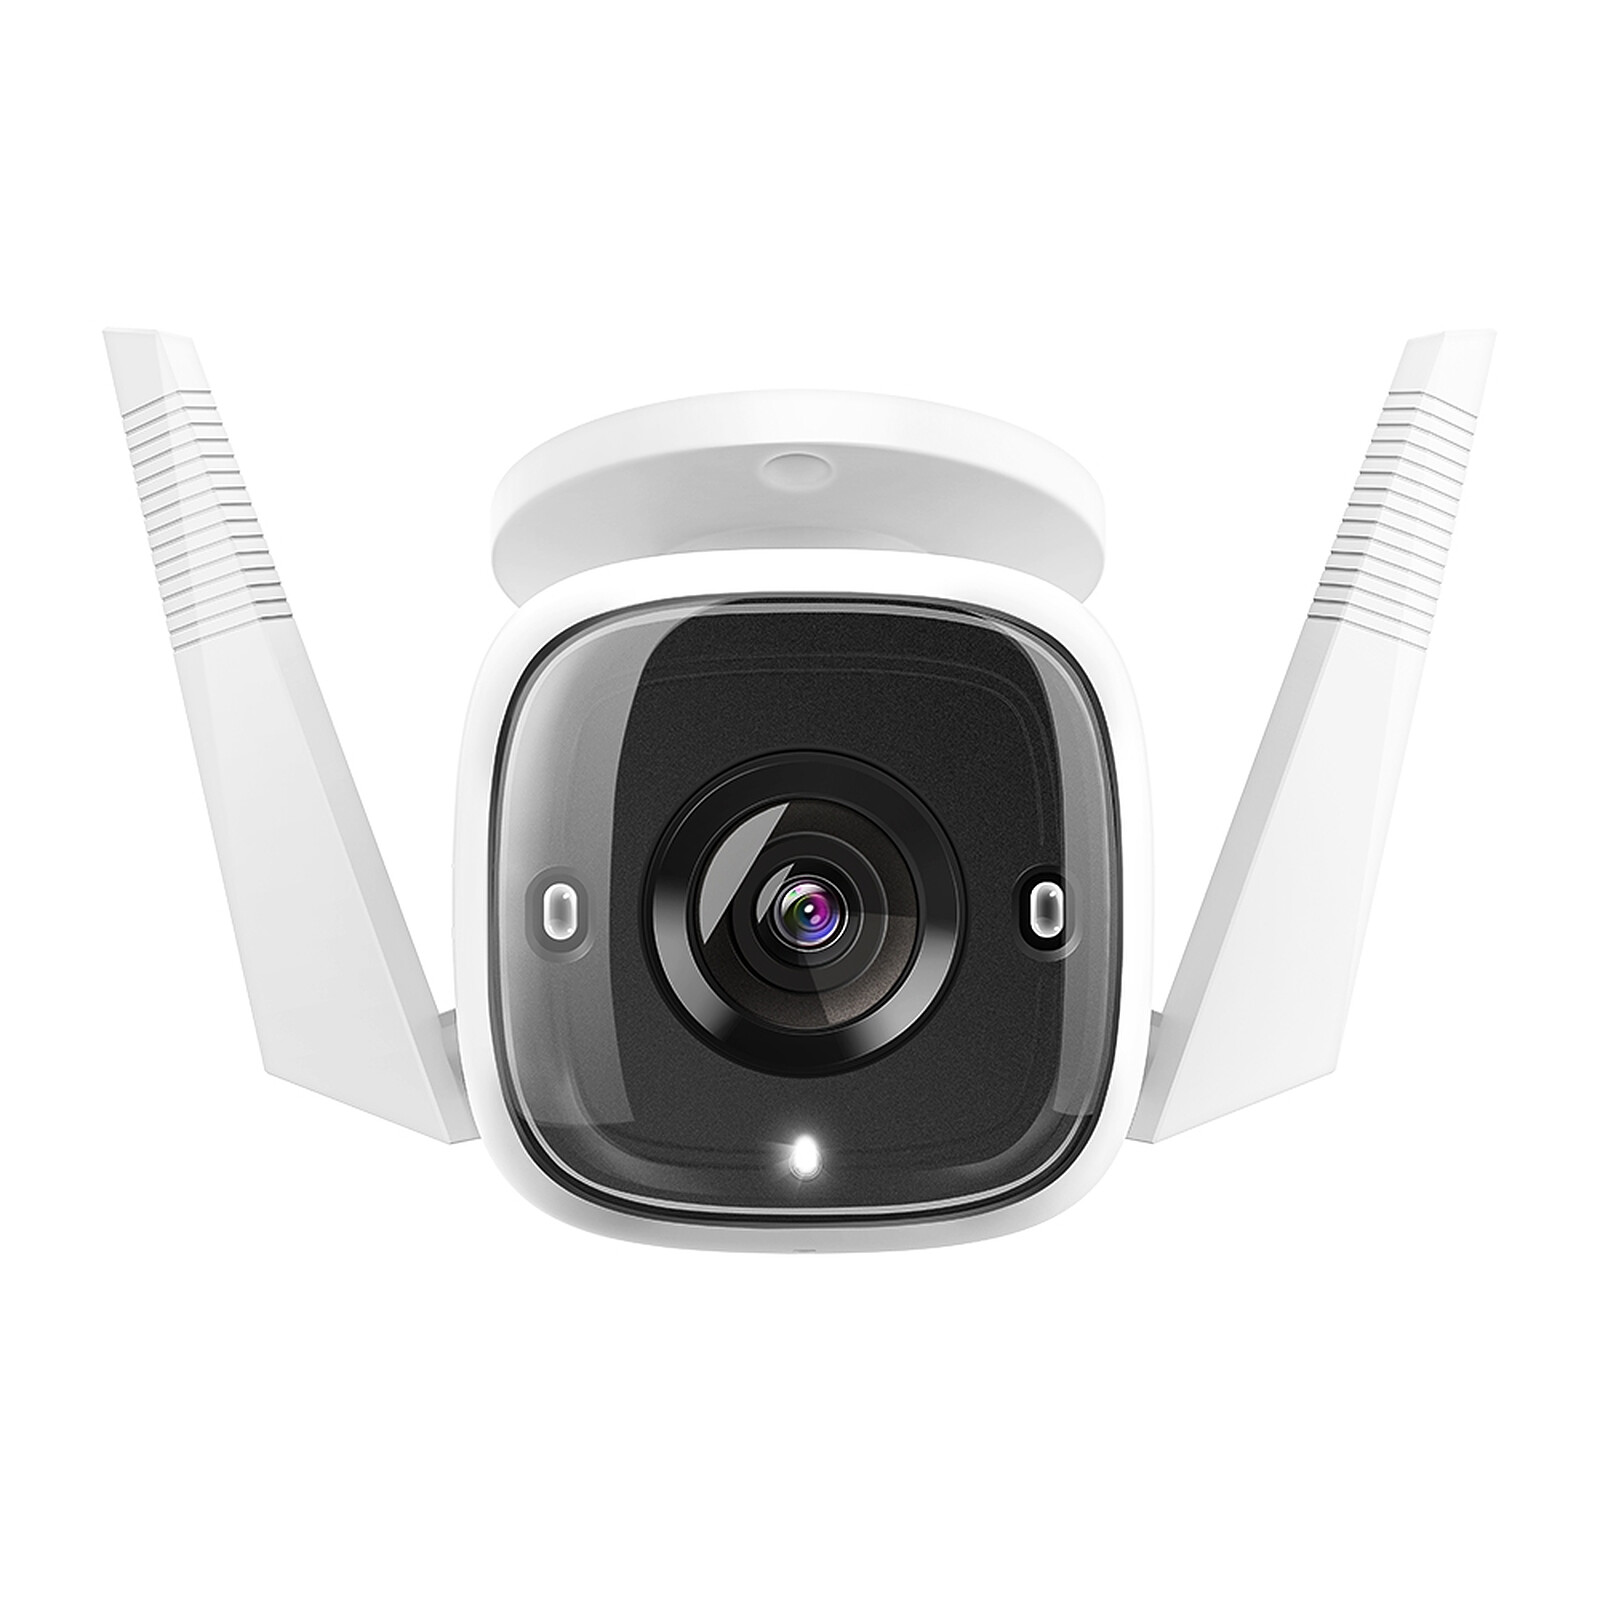 TP-LINK Tapo C210 - Caméra de surveillance - Garantie 3 ans LDLC